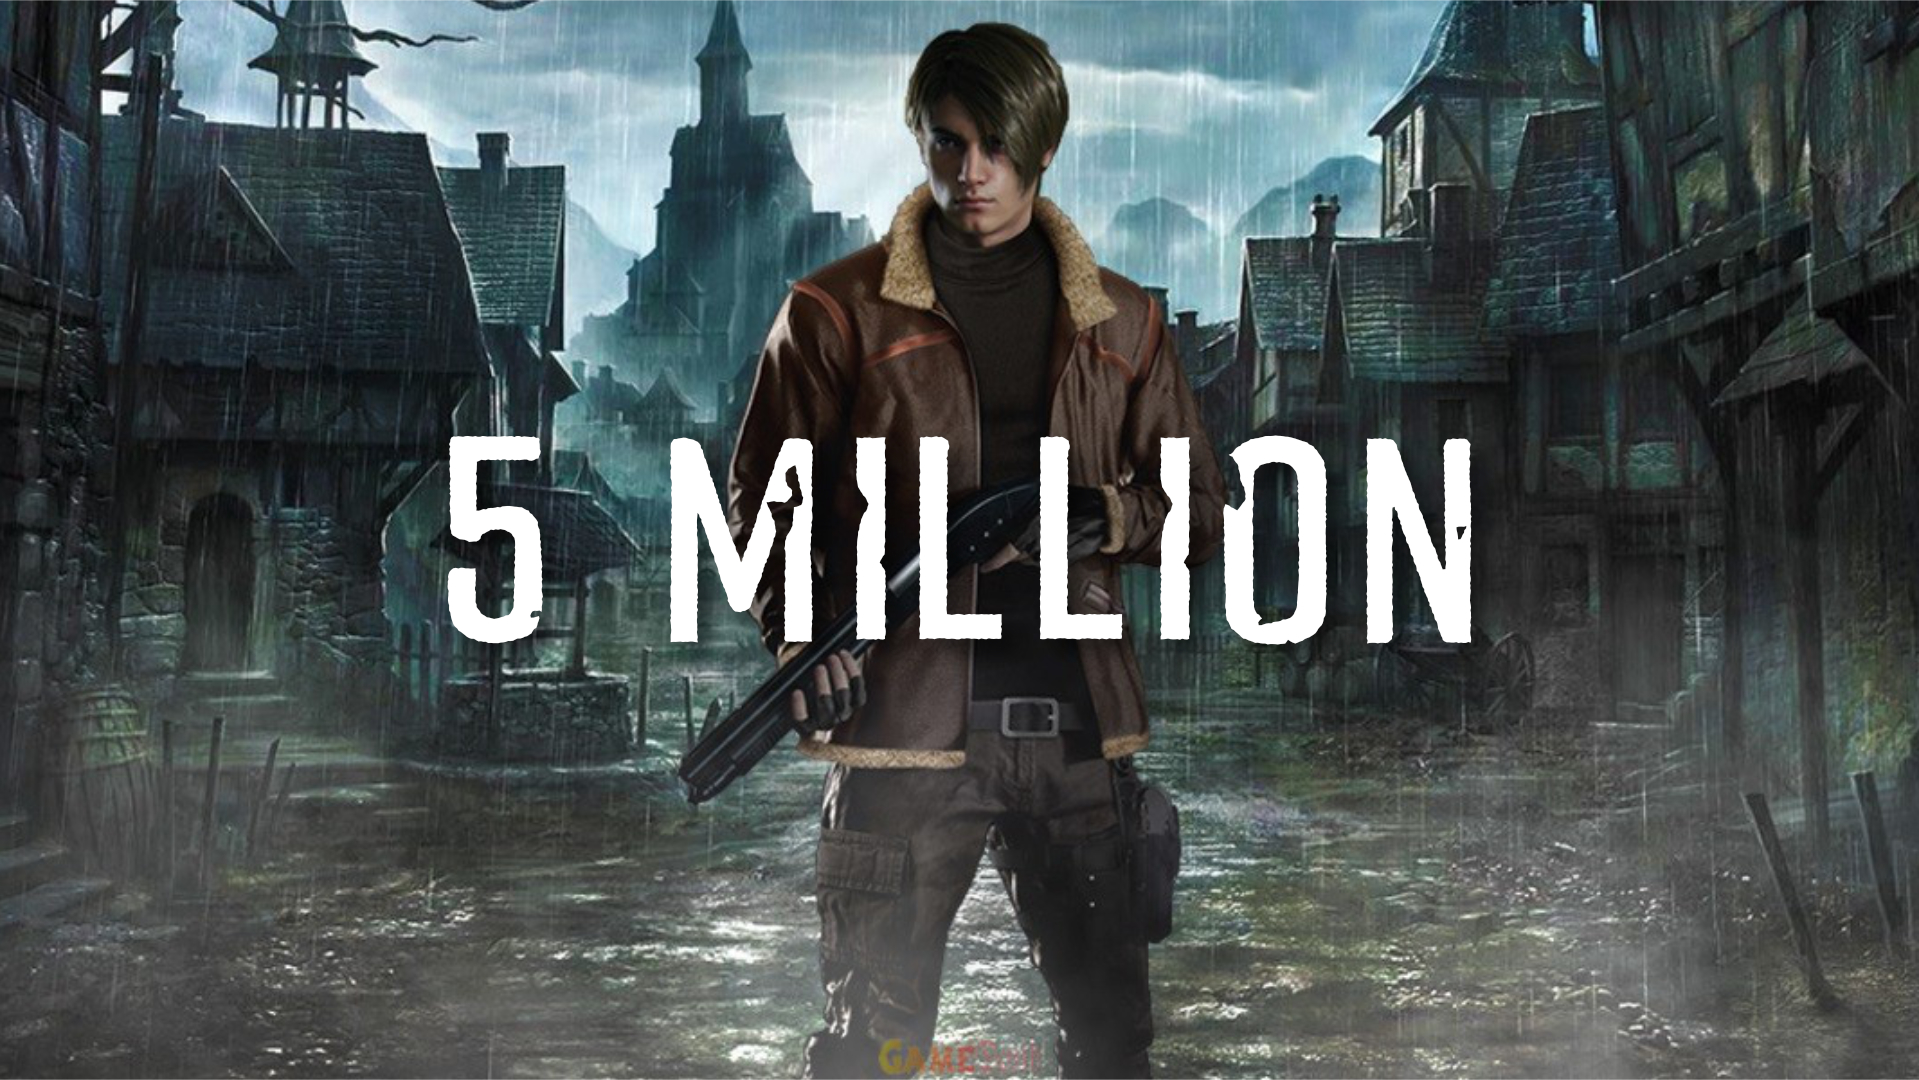 Capcom lança Resident Evil 4; confira os preços